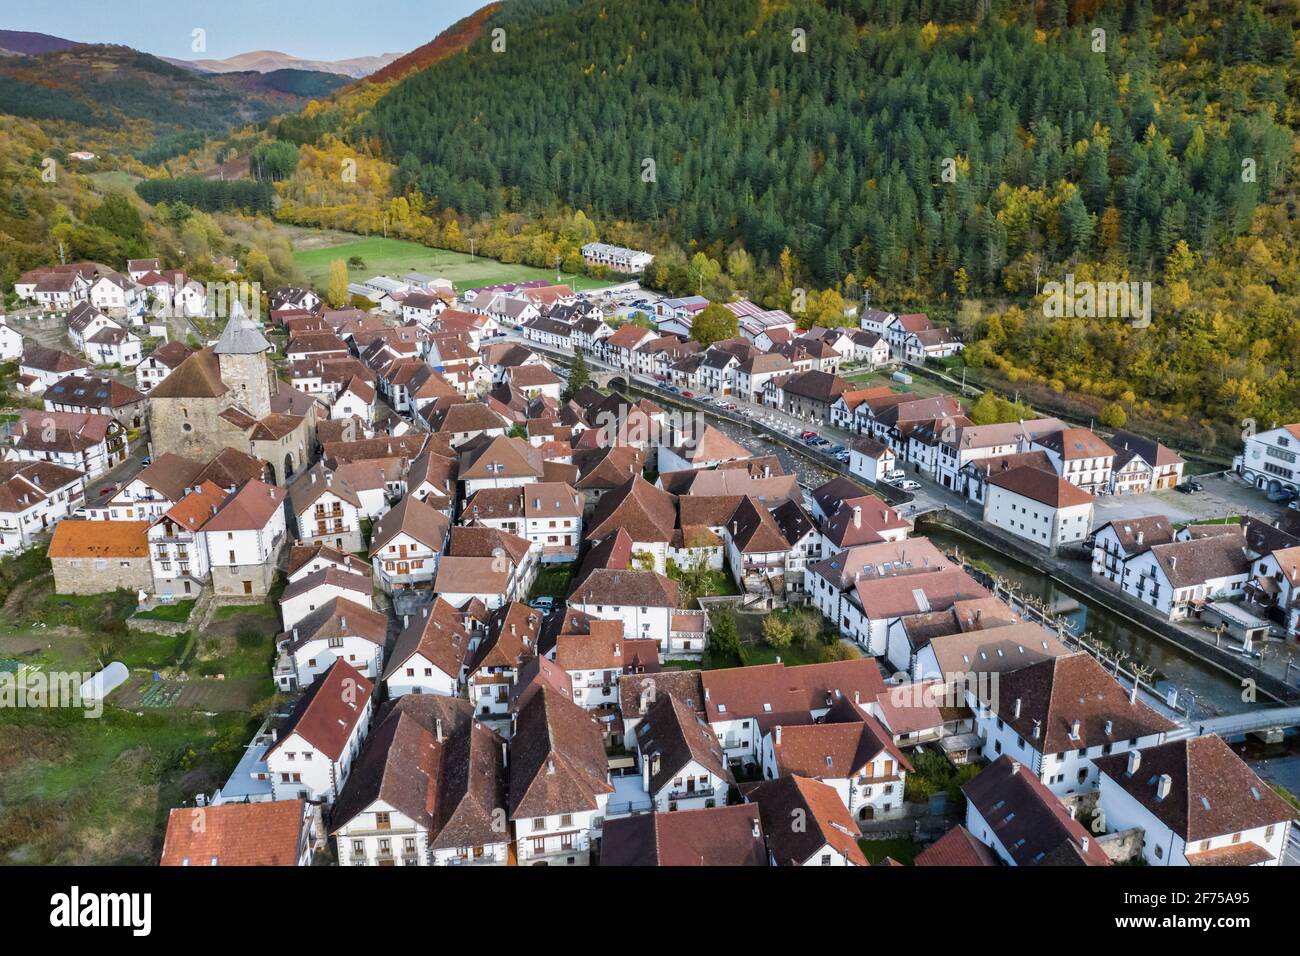 Vista aérea de un pueblo en una zona montañosa. Foto de stock